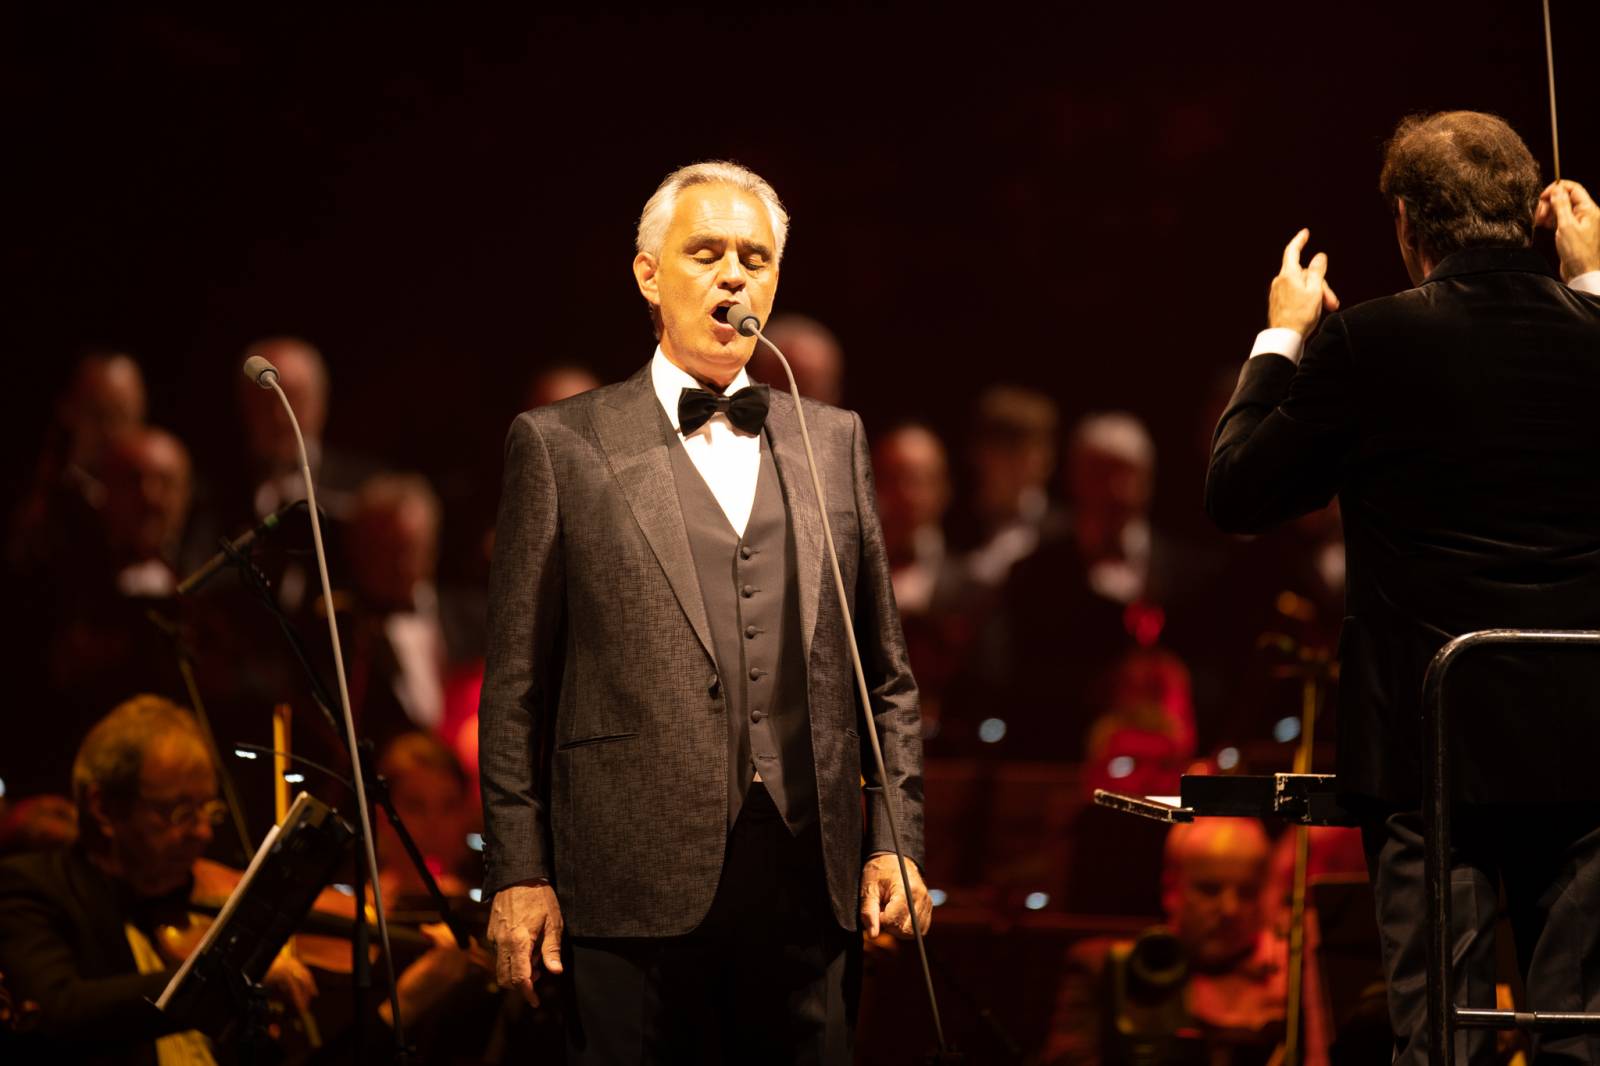 Andrea Bocelli zaplnil pražskou O2 arenu, nevidomý tenorista pozval na pódium několik hostů